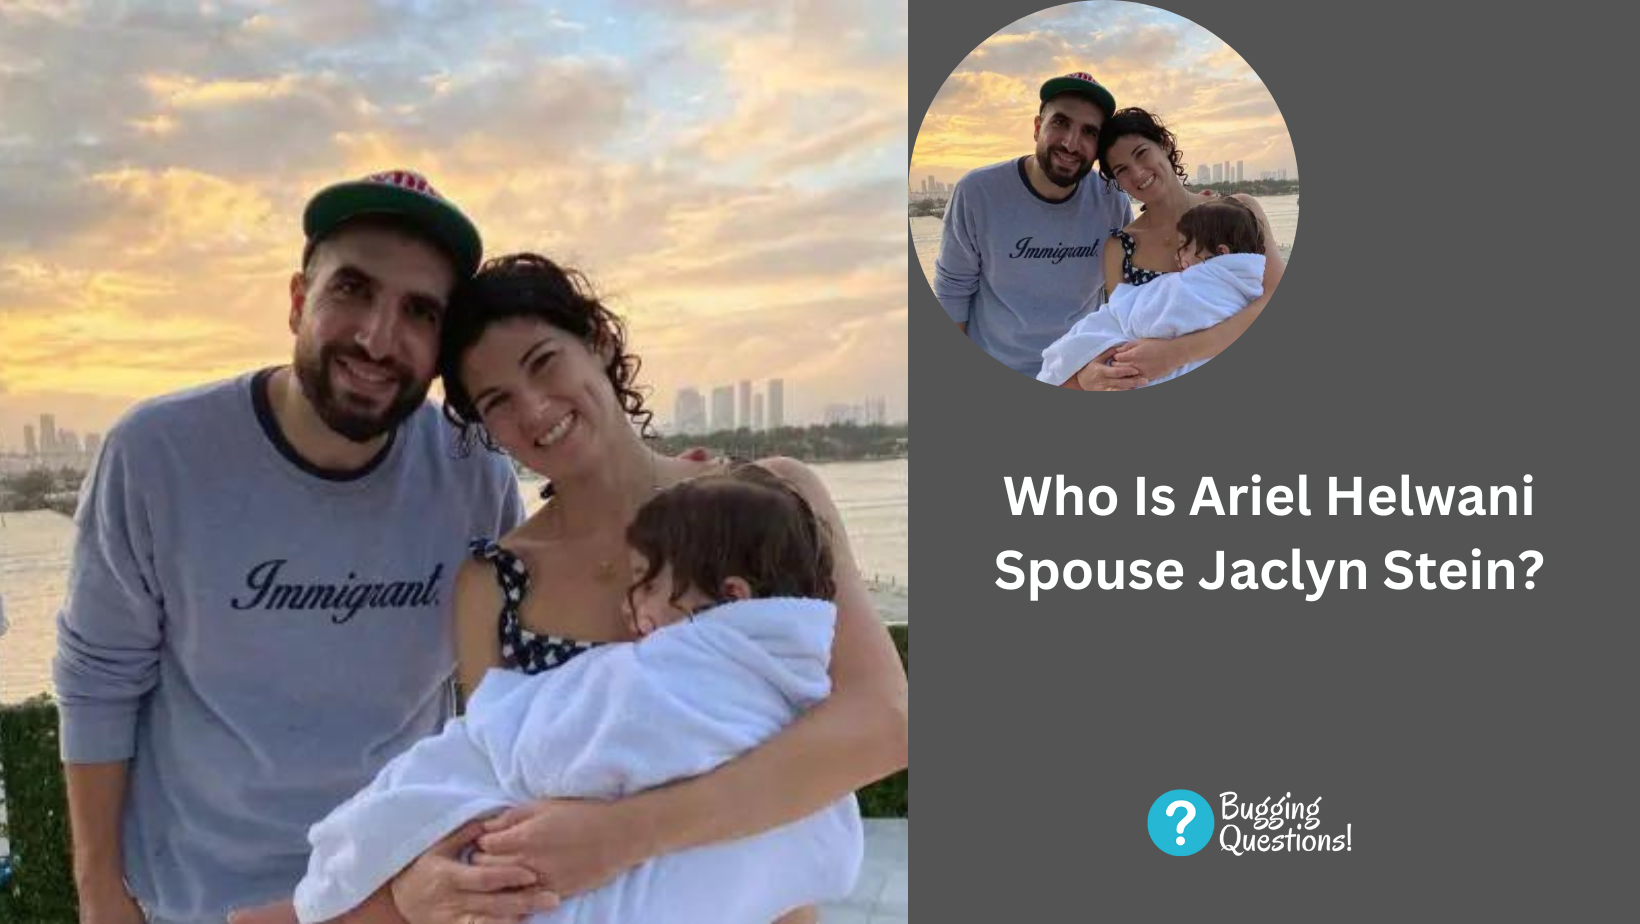 Who Is Ariel Helwani Spouse Jaclyn Stein?